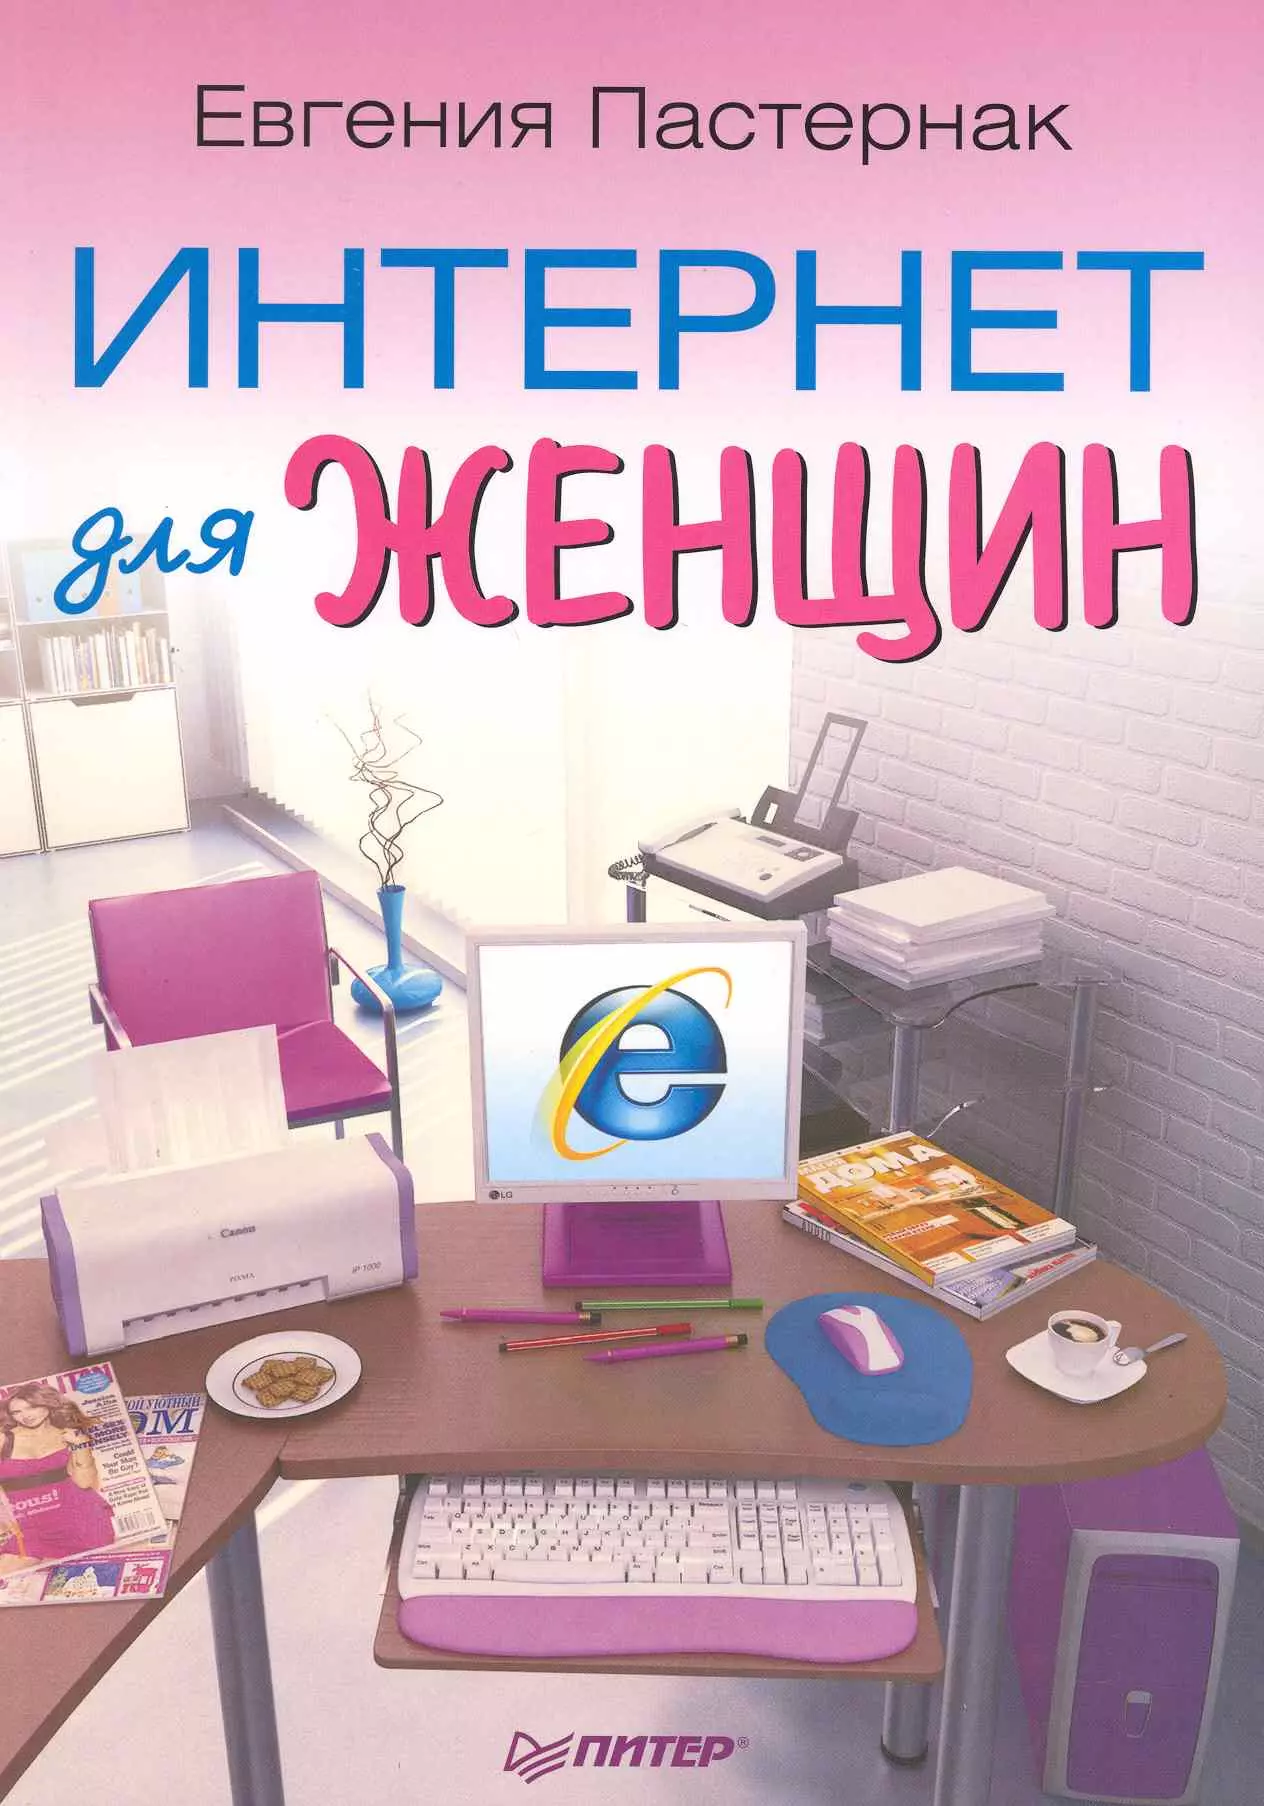 Пастернак Евгения Борисовна - Интернет для женщин.  3-е изд